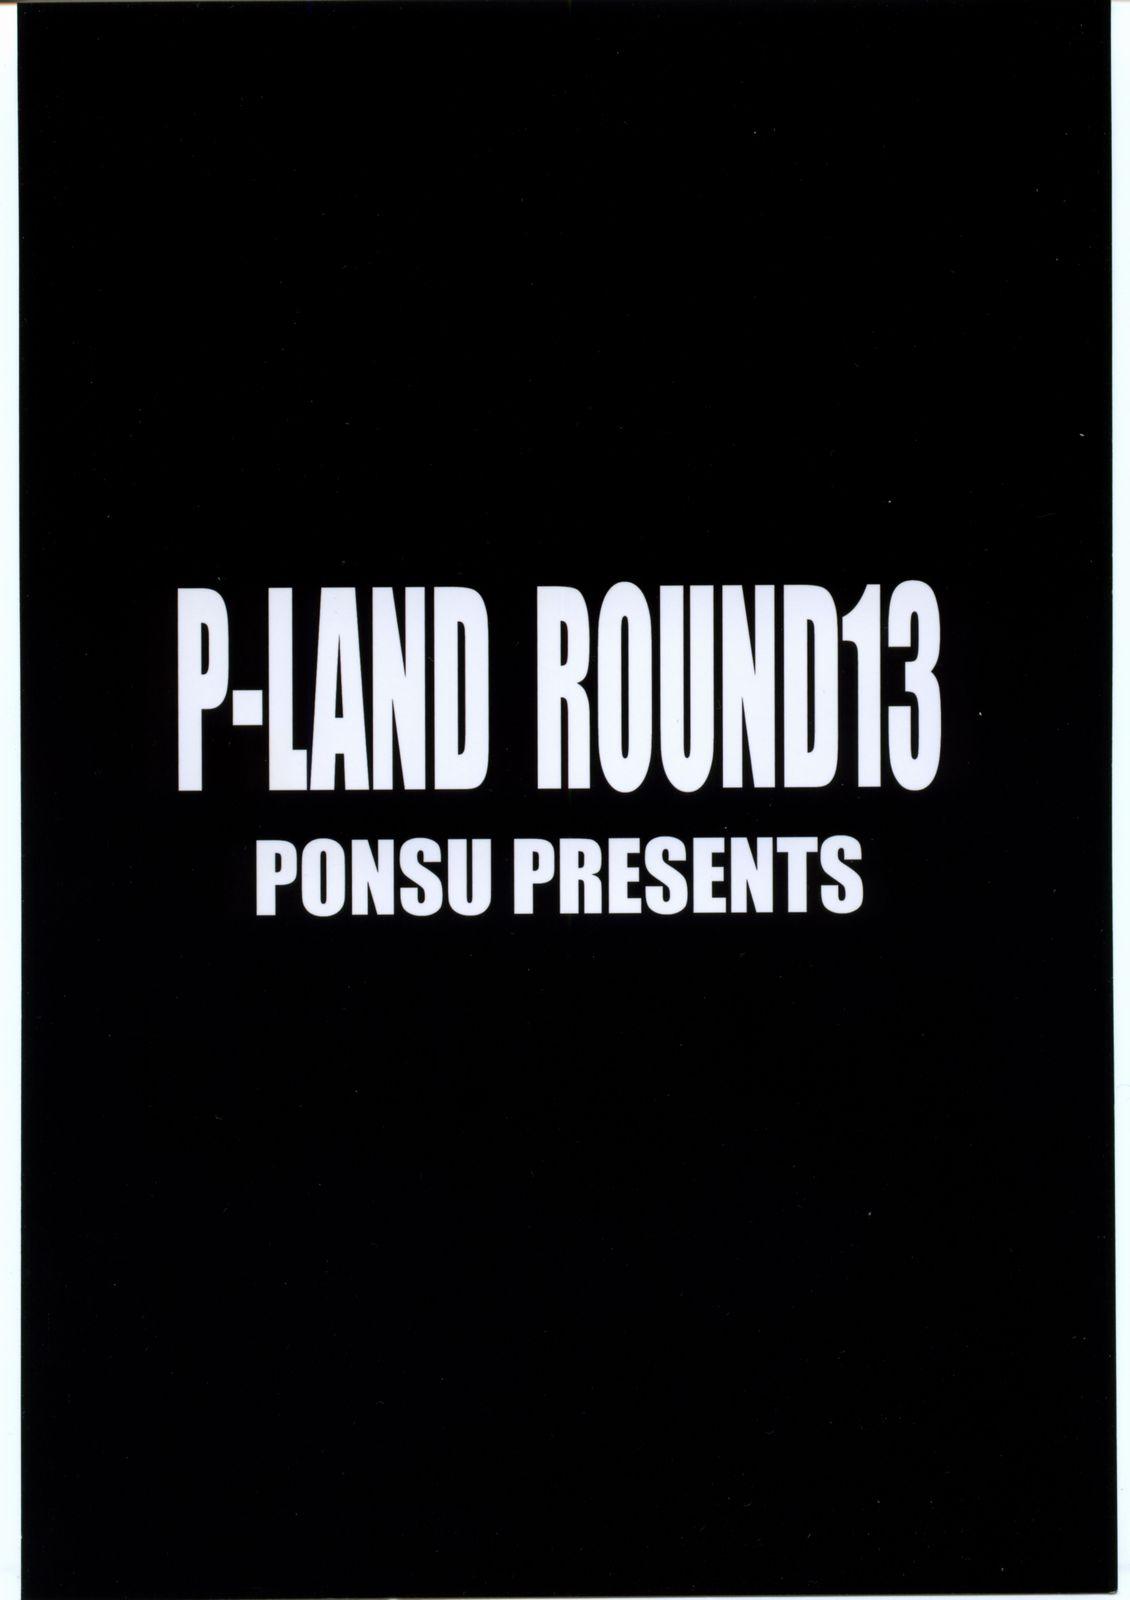 P-Land Round 13 21